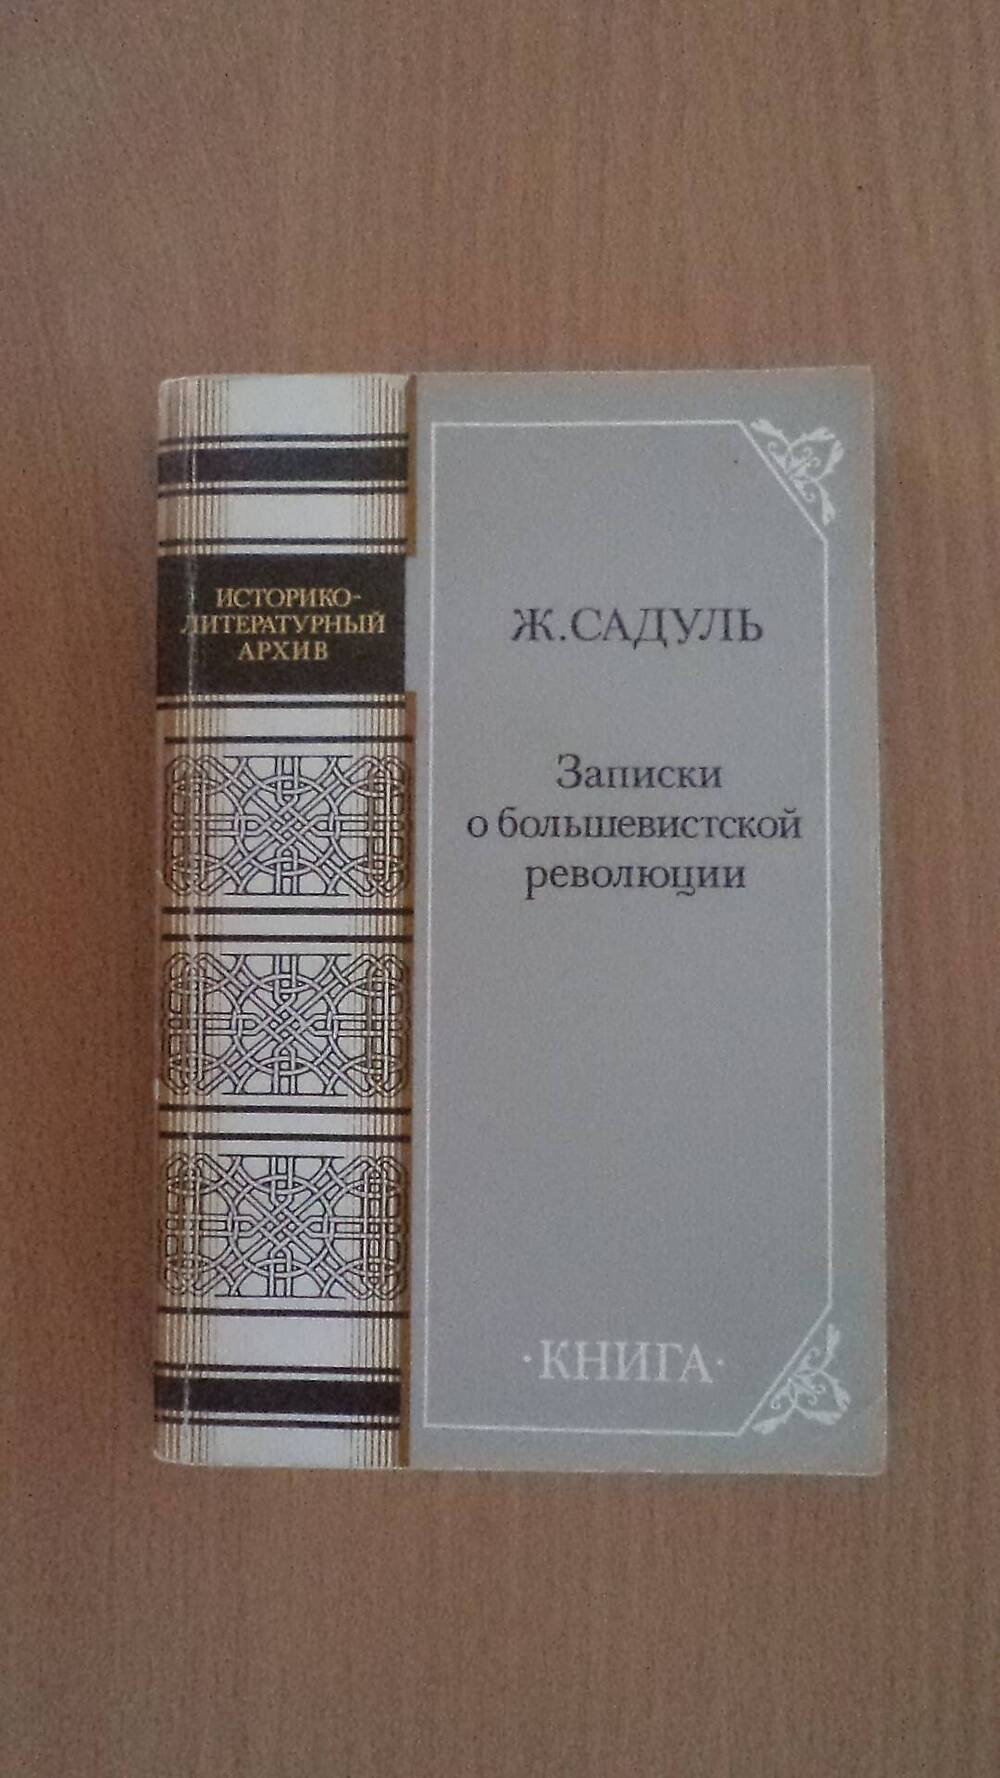 Книга Записки о большевистской революции Историко-литературный архив